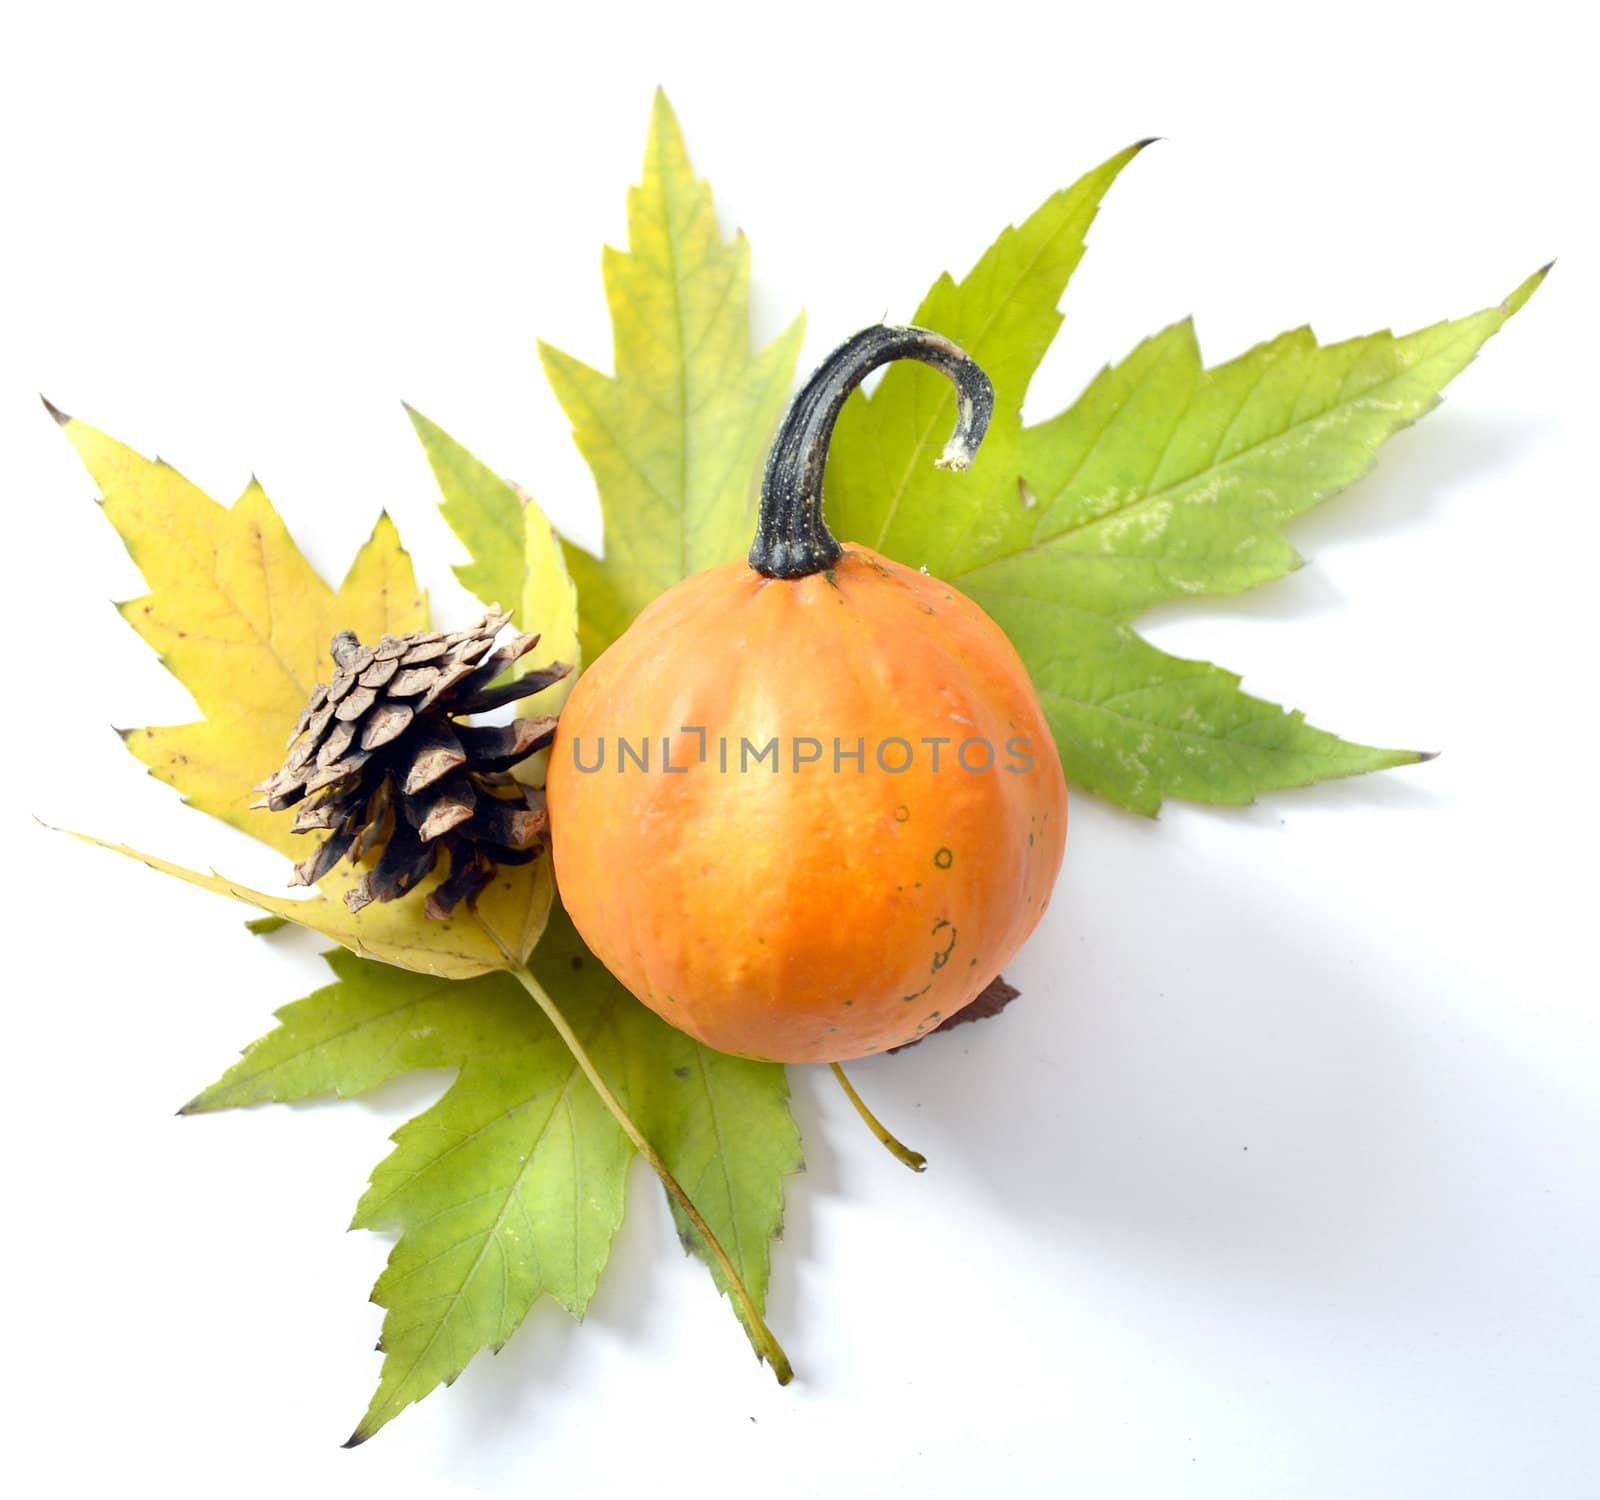 Gourds, leaves and cones representing autumn symbols